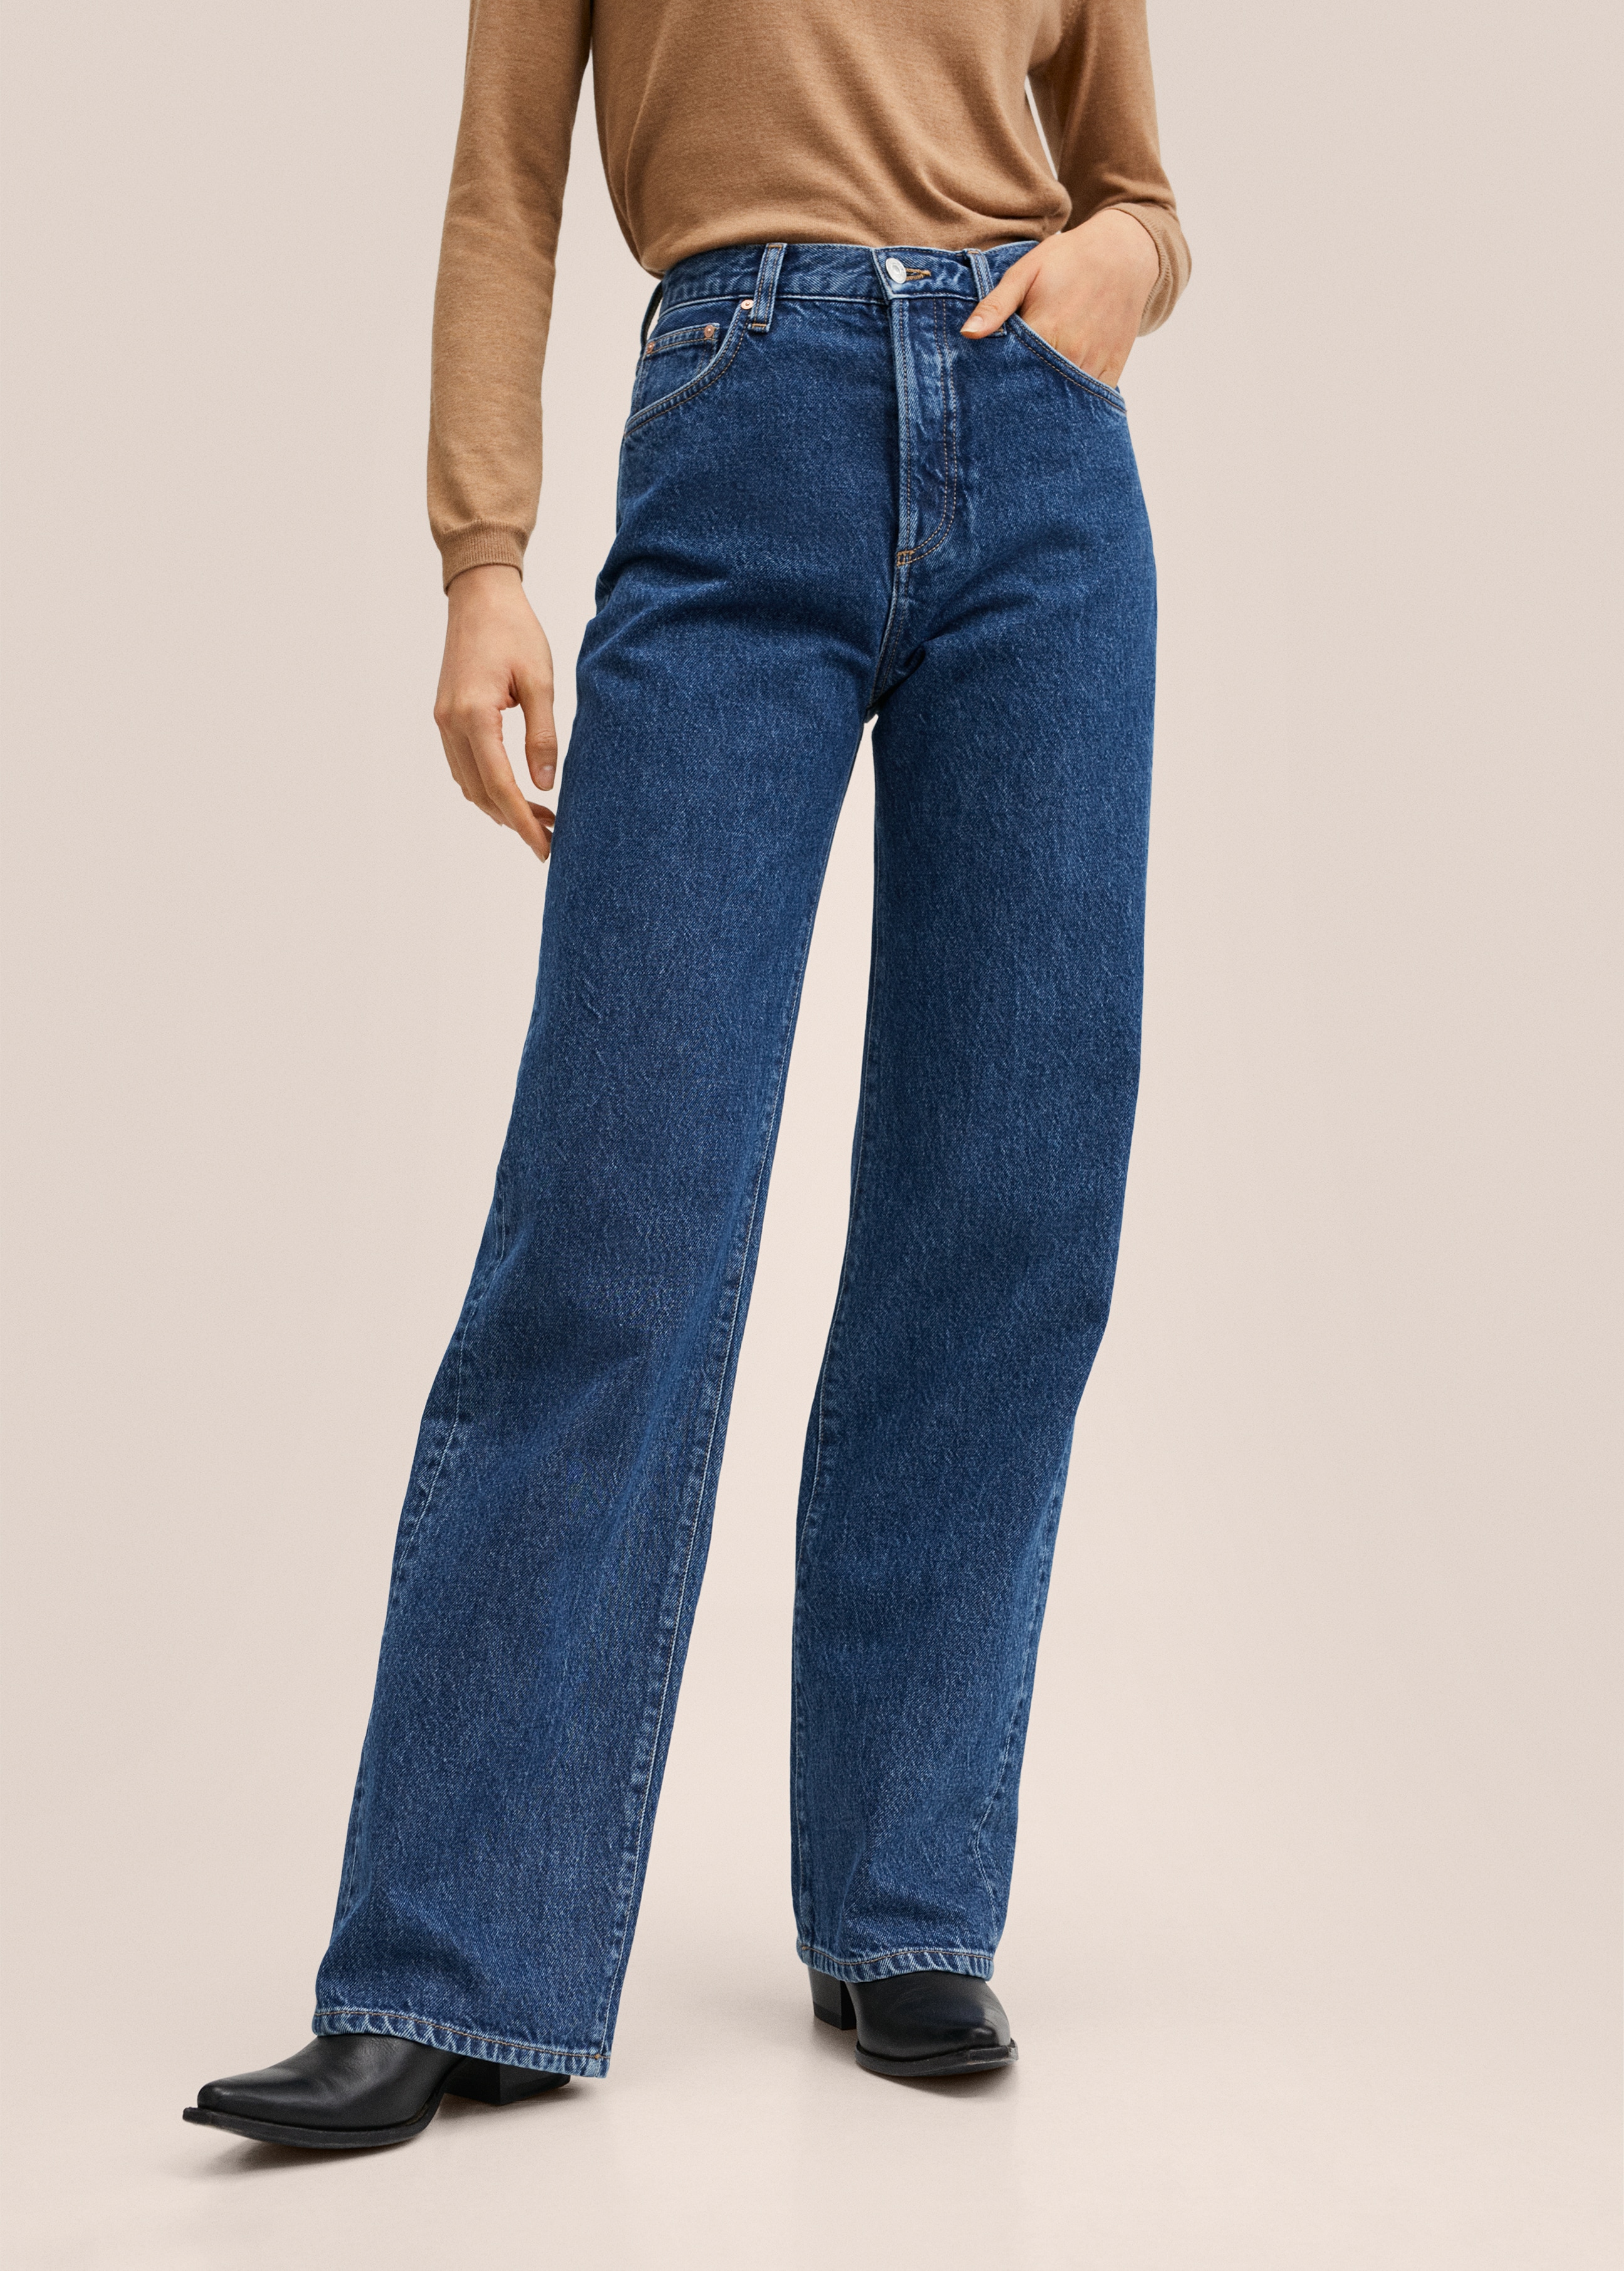 Gerade Jeans mit hohem Bund - Mittlere Ansicht